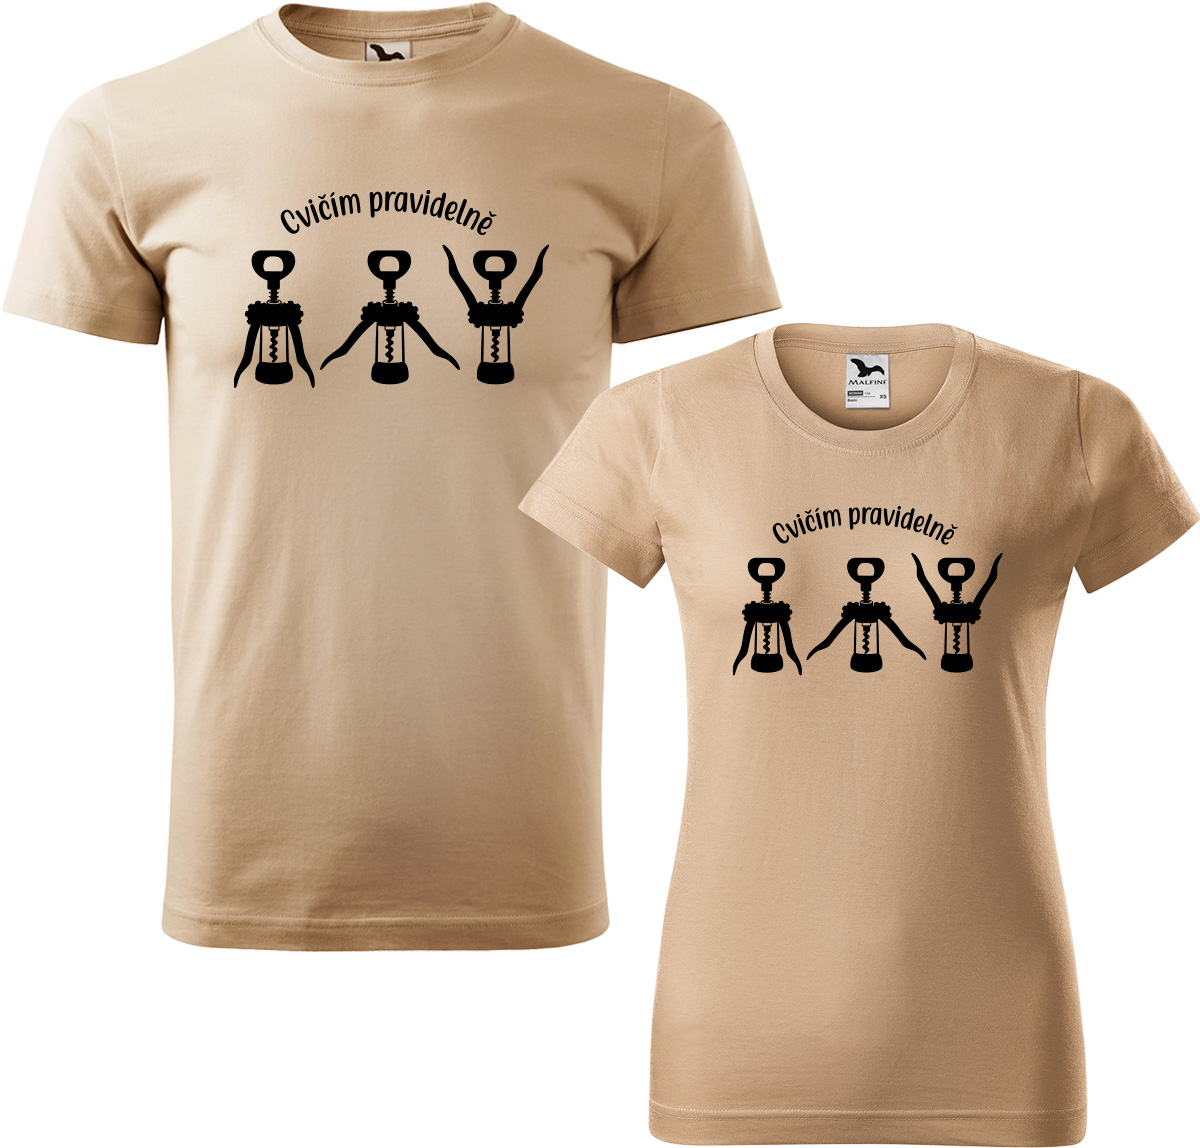 Trička pro páry - Cvičím pravidelně Barva: Písková (08), Velikost dámské tričko: L, Velikost pánské tričko: L